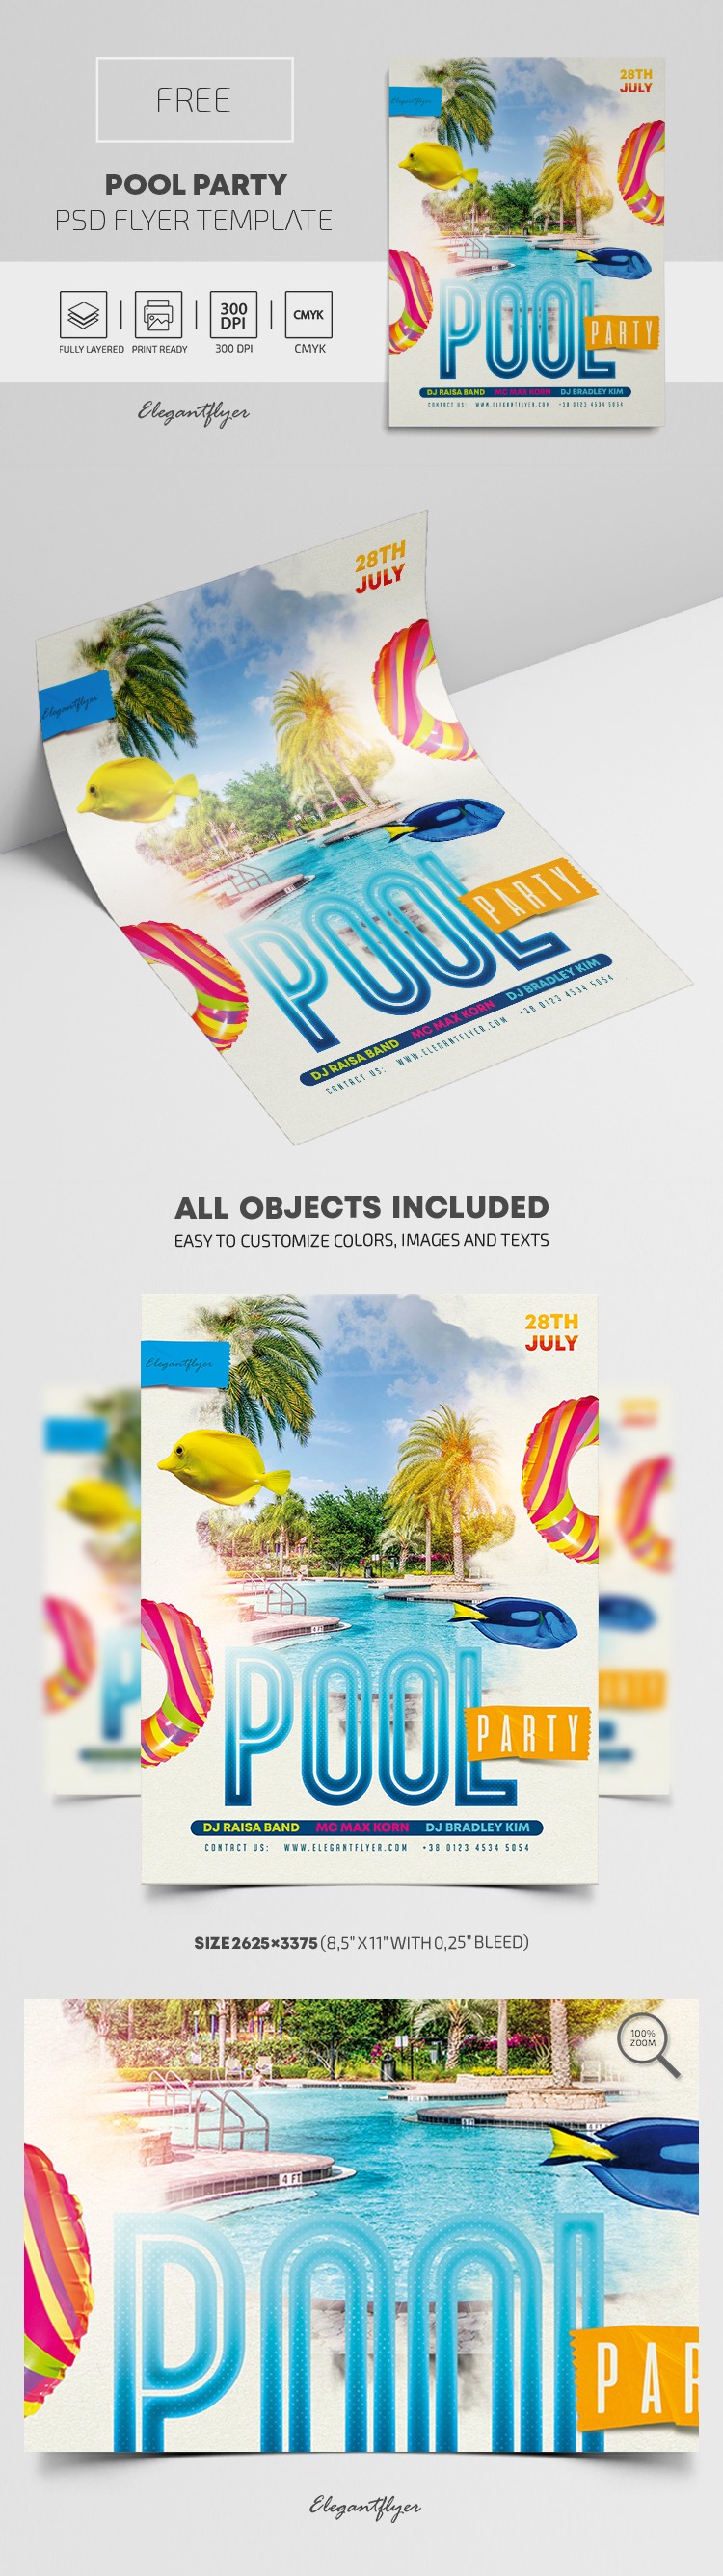 Pool Party Flyer by ElegantFlyer